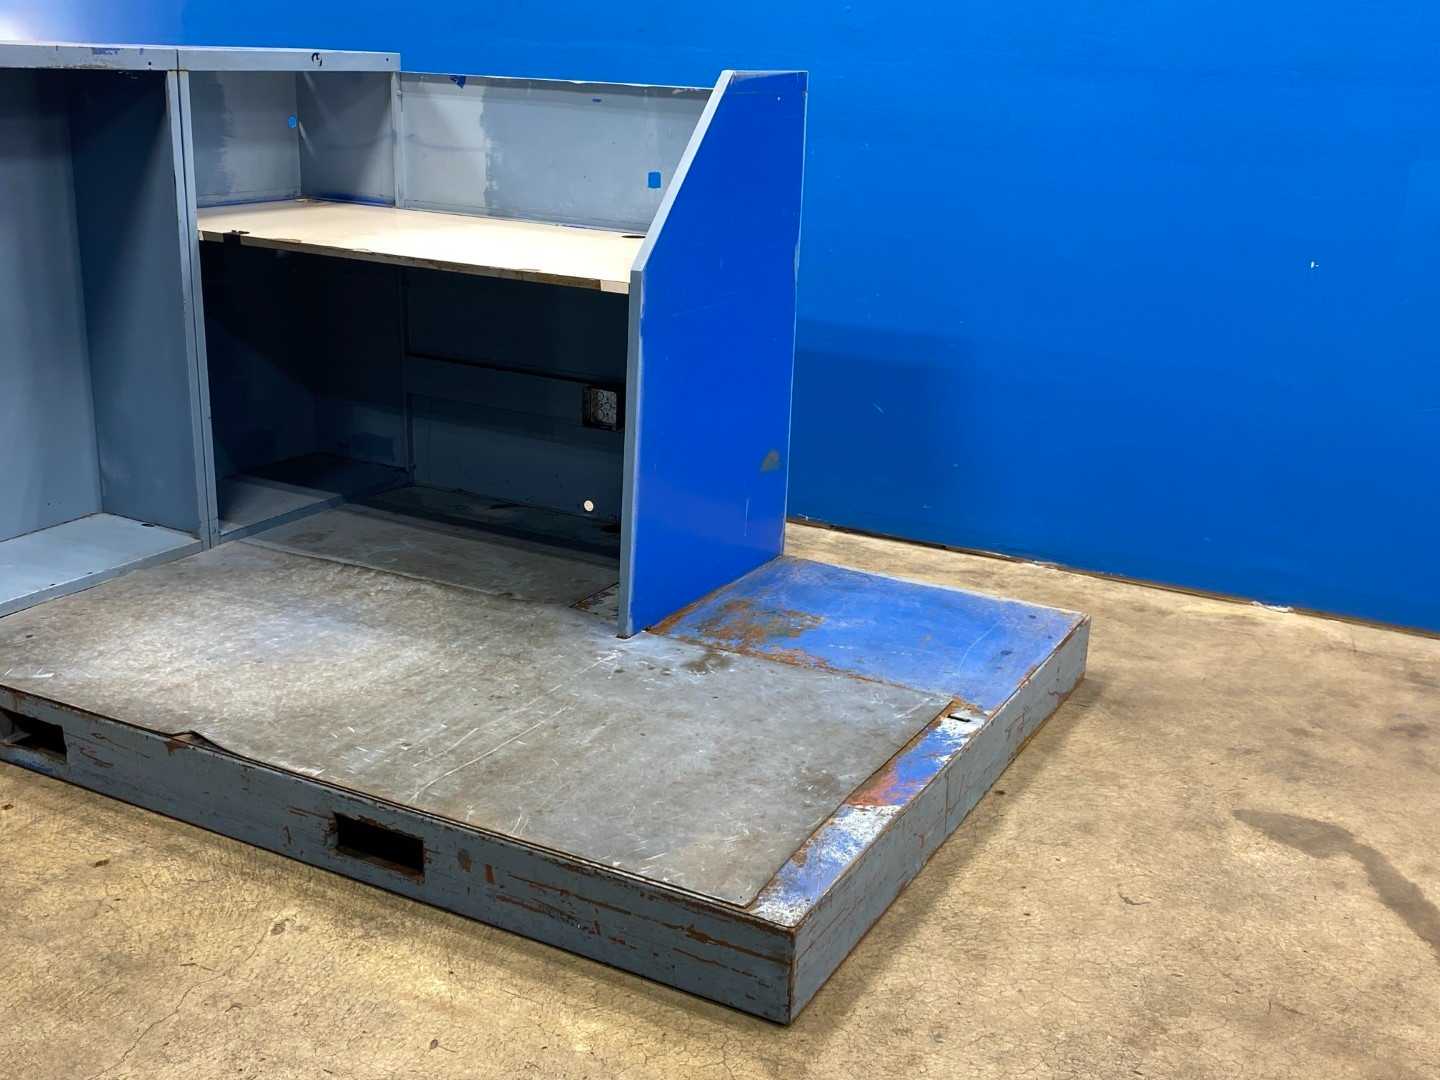 Portable Metal Work Desk (office) w/ Metal Platform Forklift Holes for transit